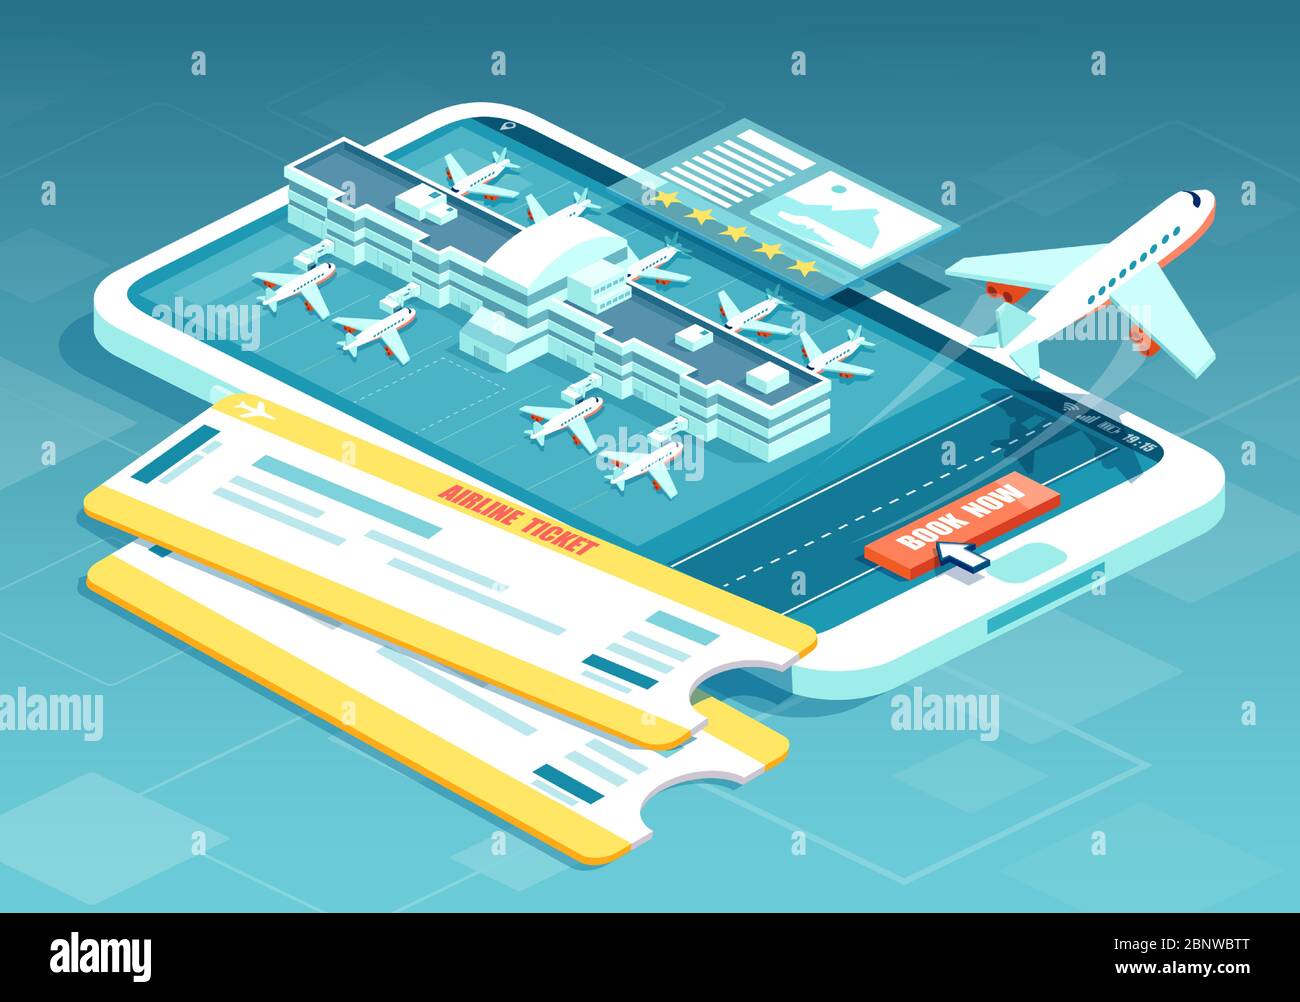 Online-Buchung von Flugtickets. Vektor einer Reise, Geschäftsflüge mit Bordkarte, Flughafen-Terminals und Flugzeug abheben Stock Vektor